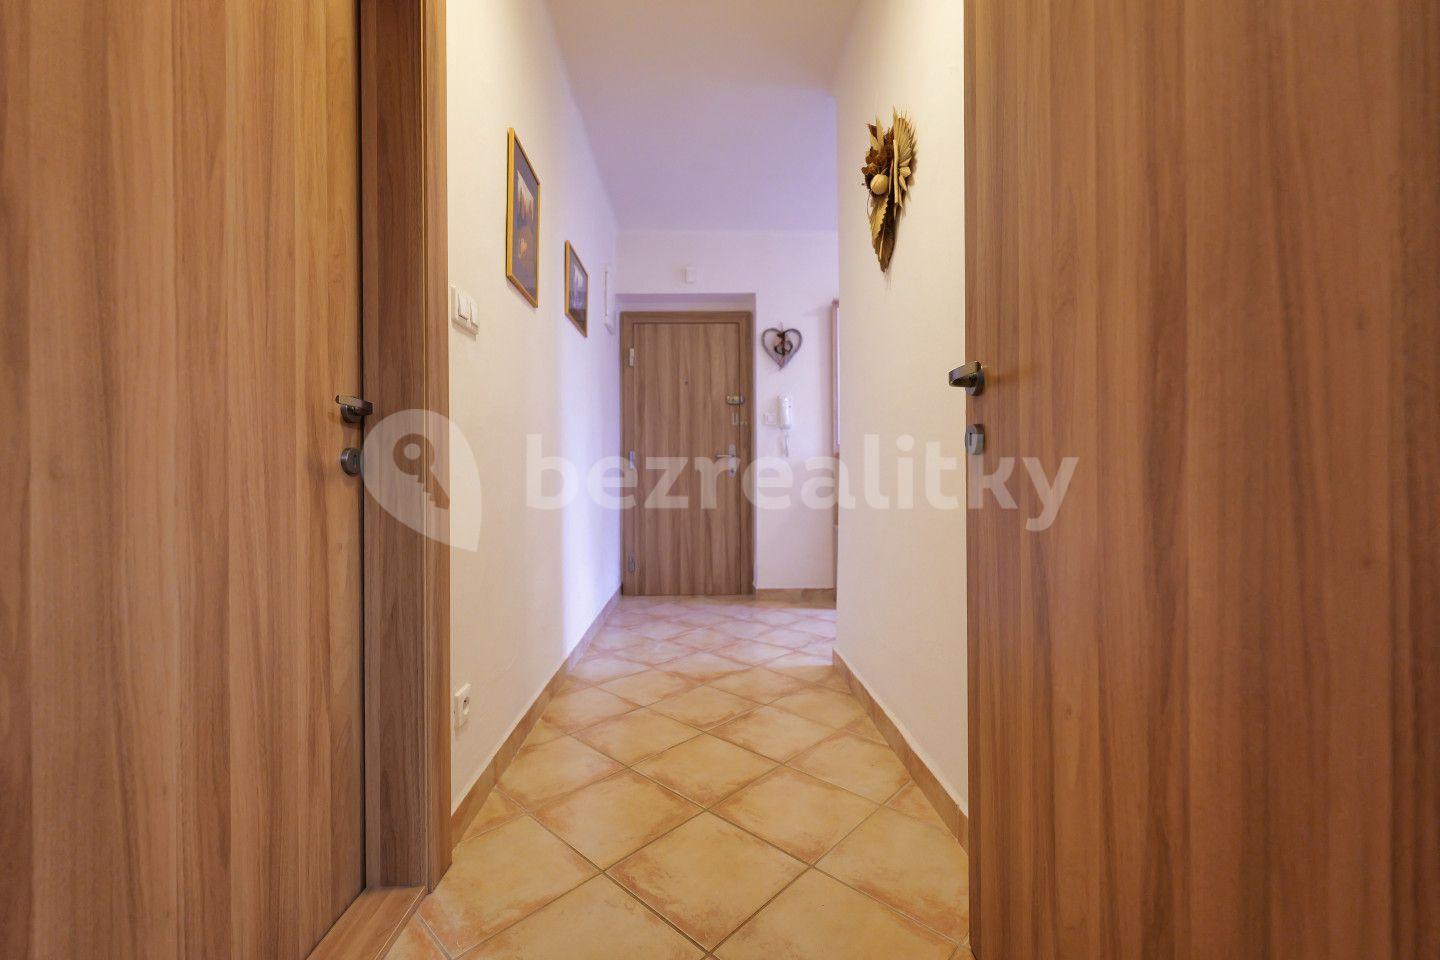 2 bedroom flat for sale, 67 m², Ulička, Kroměříž, Zlínský Region